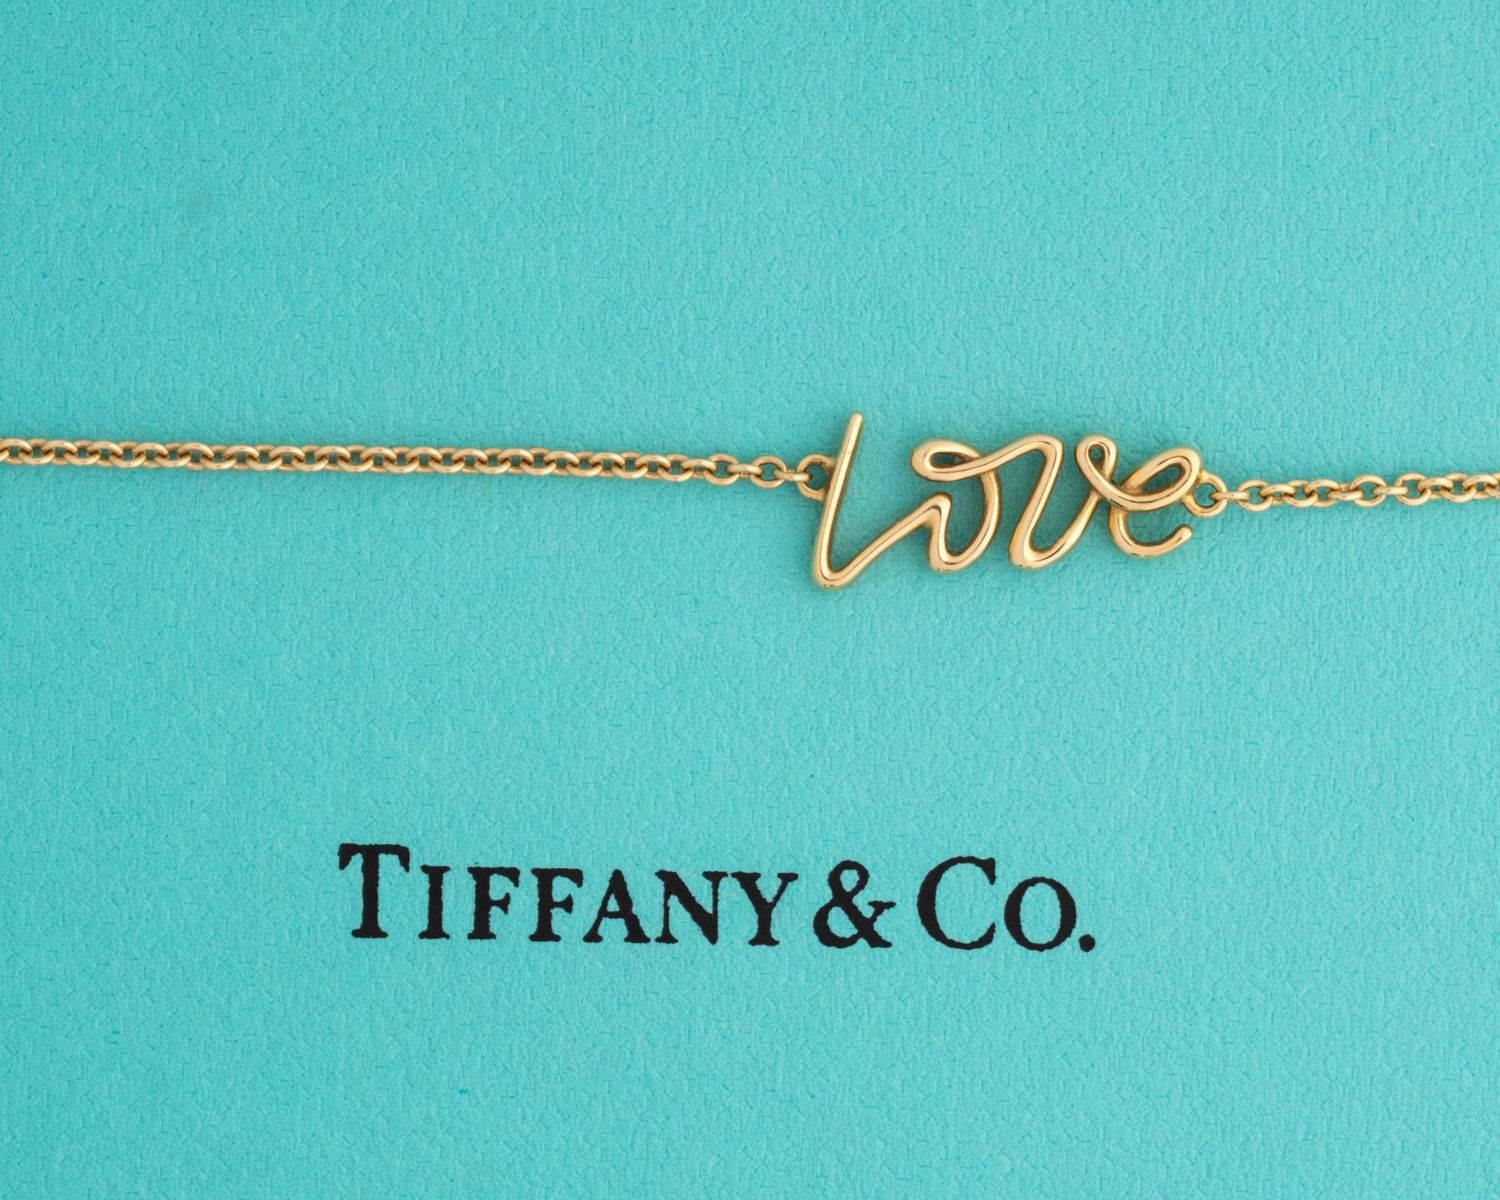 Tiffany and Co. Bracelet d'amour Paloma Picasso - Or 18 carats

Ce délicat bracelet en chaîne fait partie de la collection Tiffany and Co. Paloma Picasso Collection. Elle est fabriquée en or jaune 18 carats. Une fine chaîne s'étend de chaque